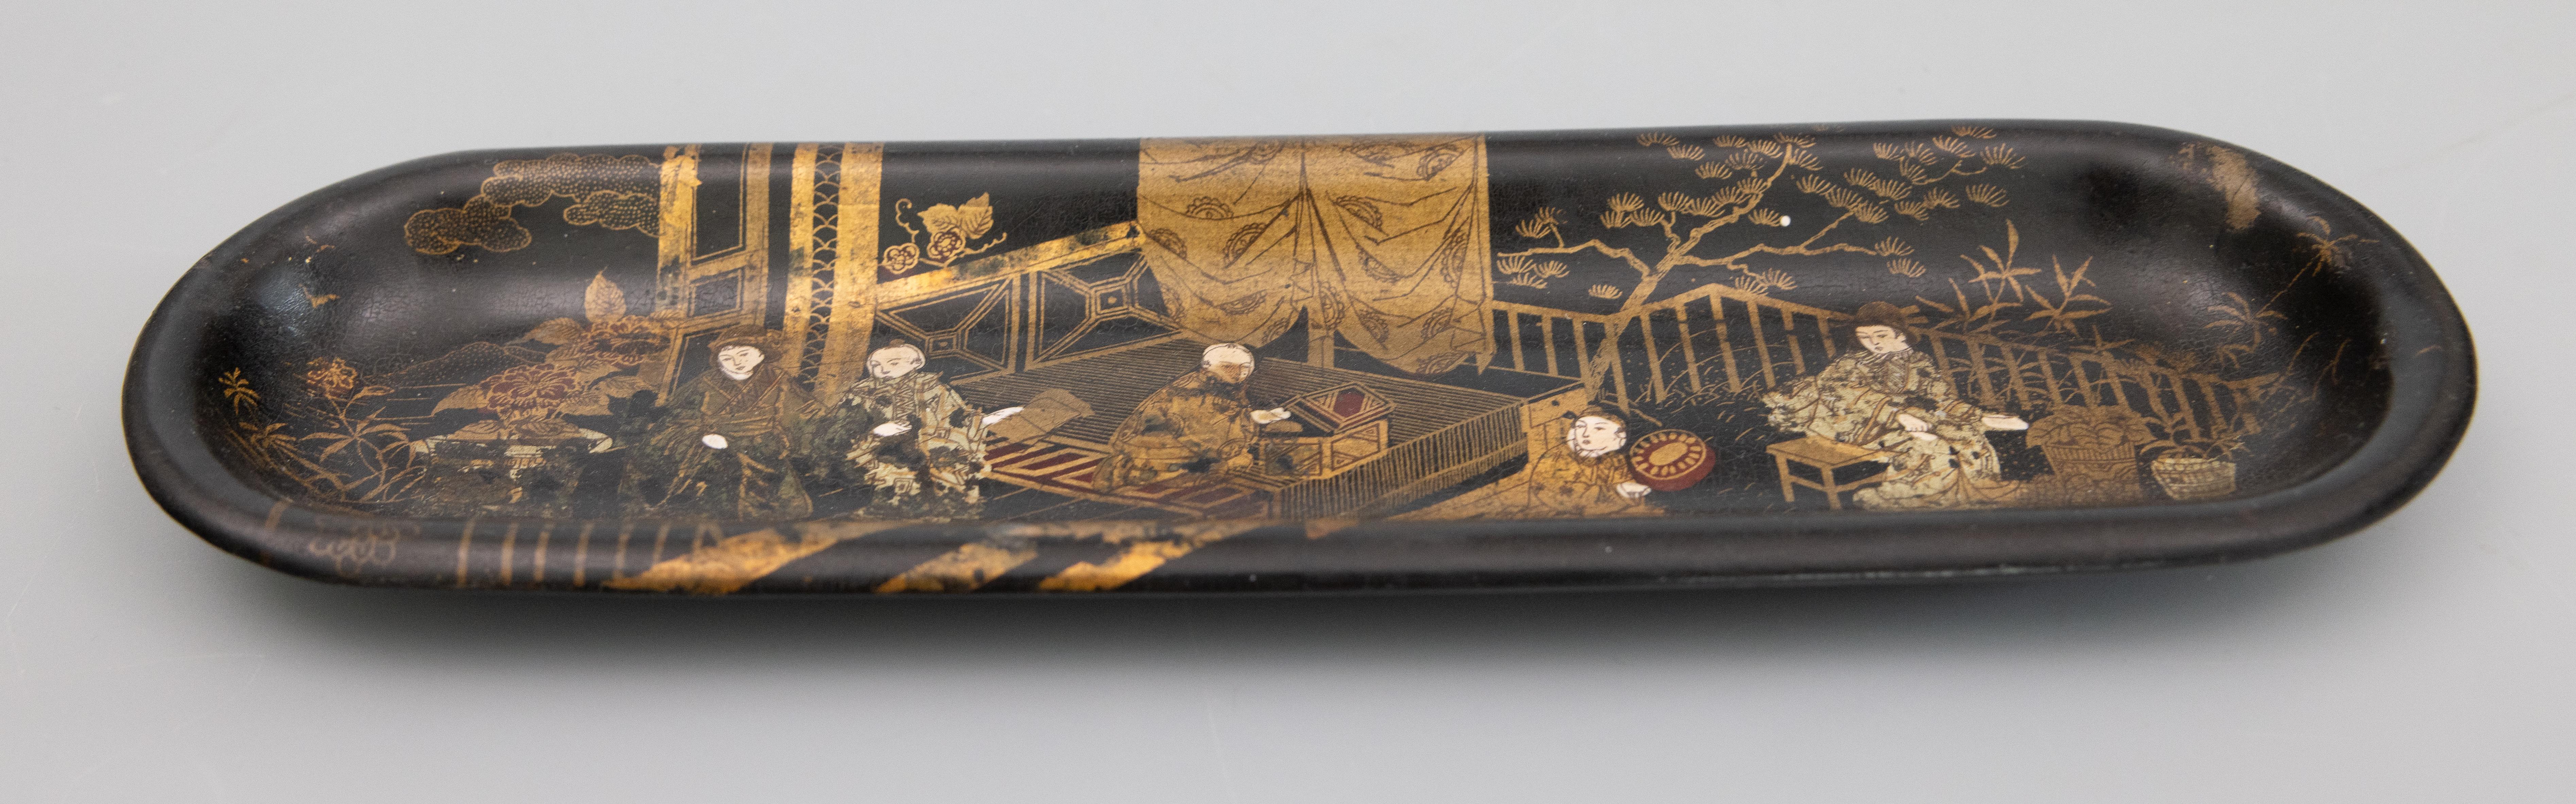 Superbe ancien plumier anglais en papier mâché à motifs de chinoiseries asiatiques. Il est fabriqué à la main et représente des personnages dorés peints à la main dans une scène de pagode de jardin avec des érables japonais sur un fond noir ébonisé.